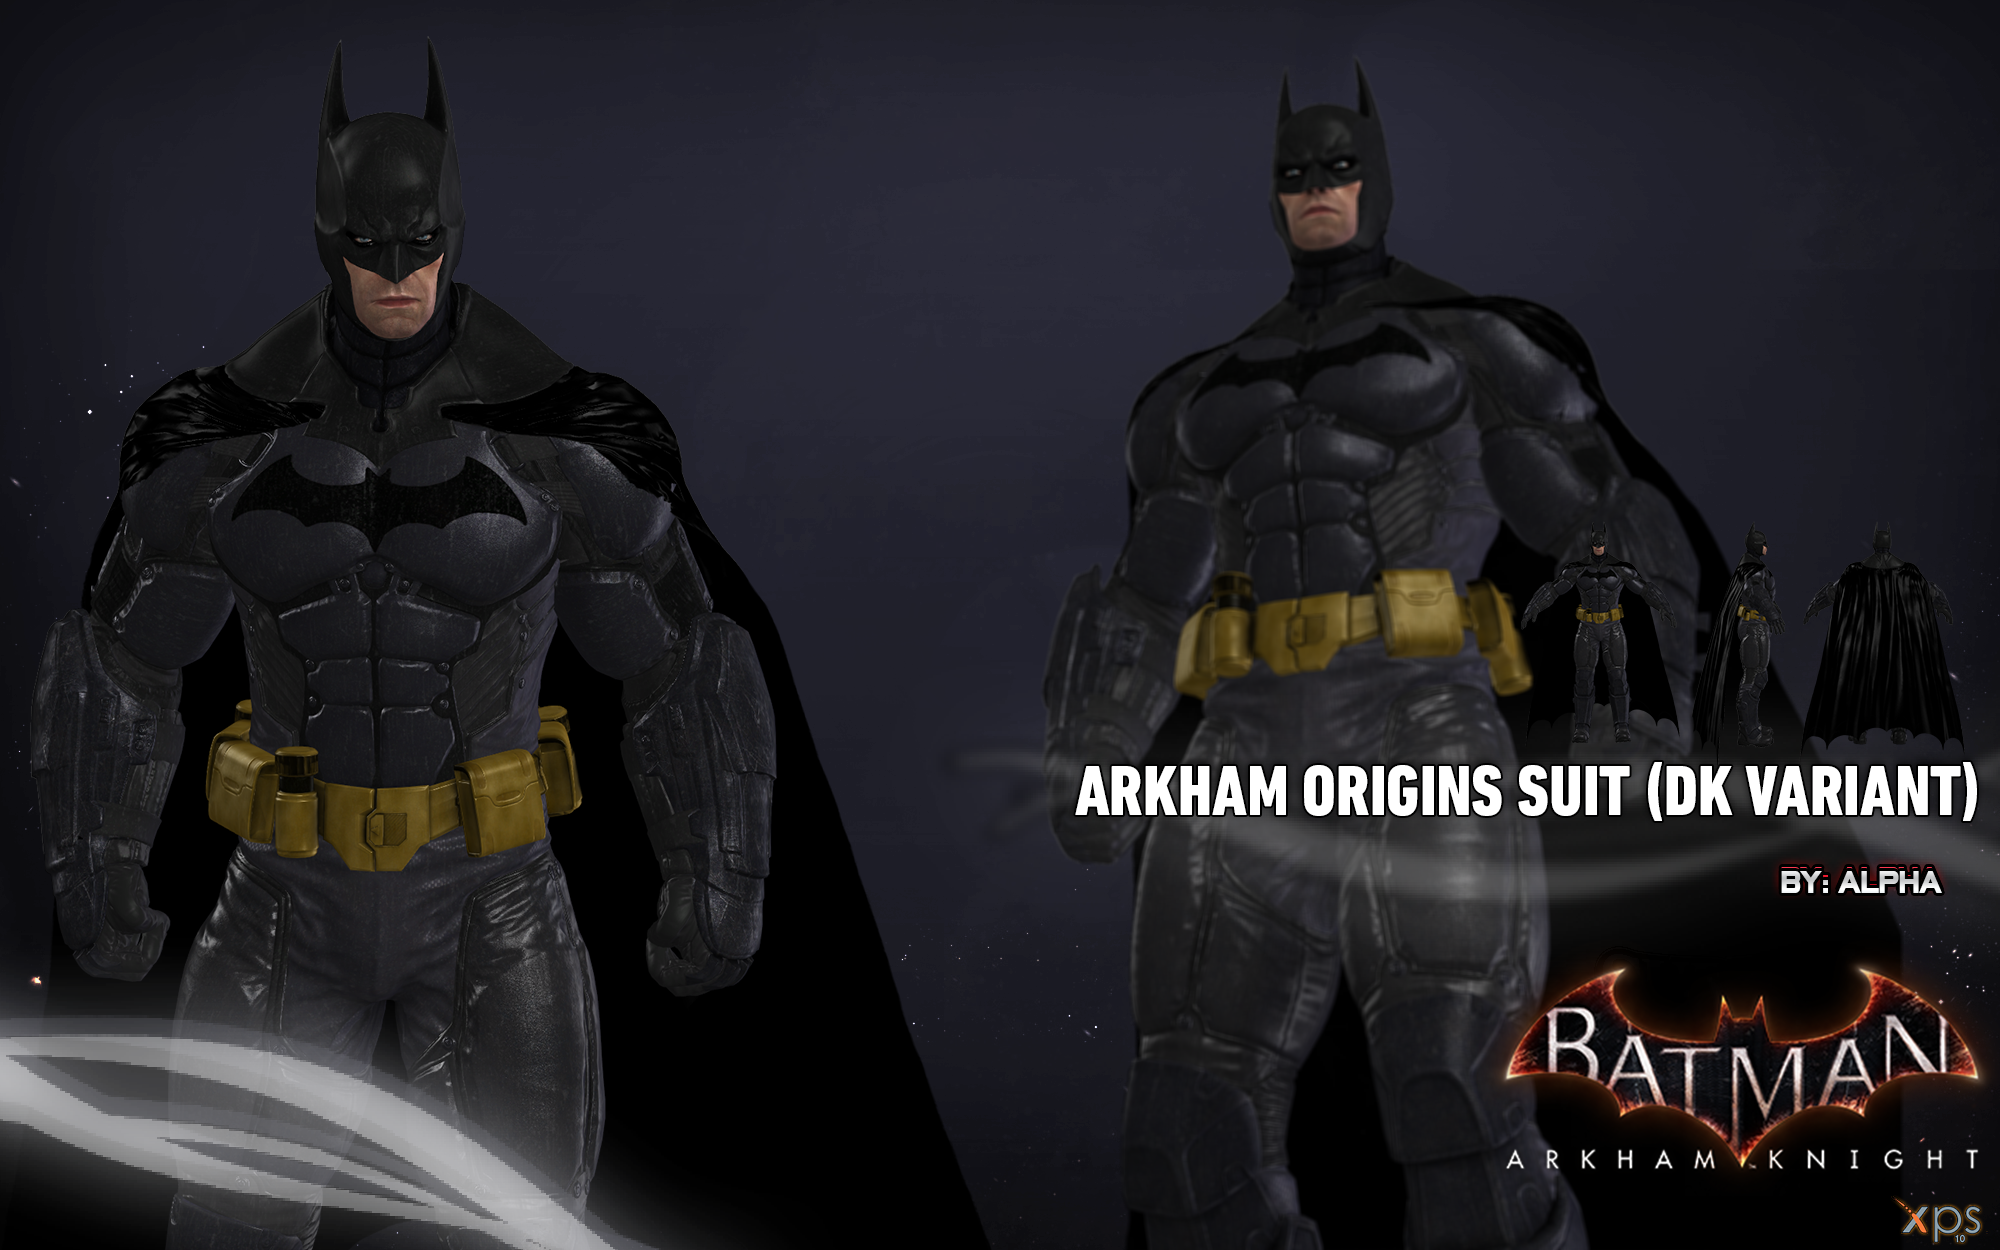 Batman Arkham Knight - Batman (DK Variant) by XNASyndicate on DeviantArt